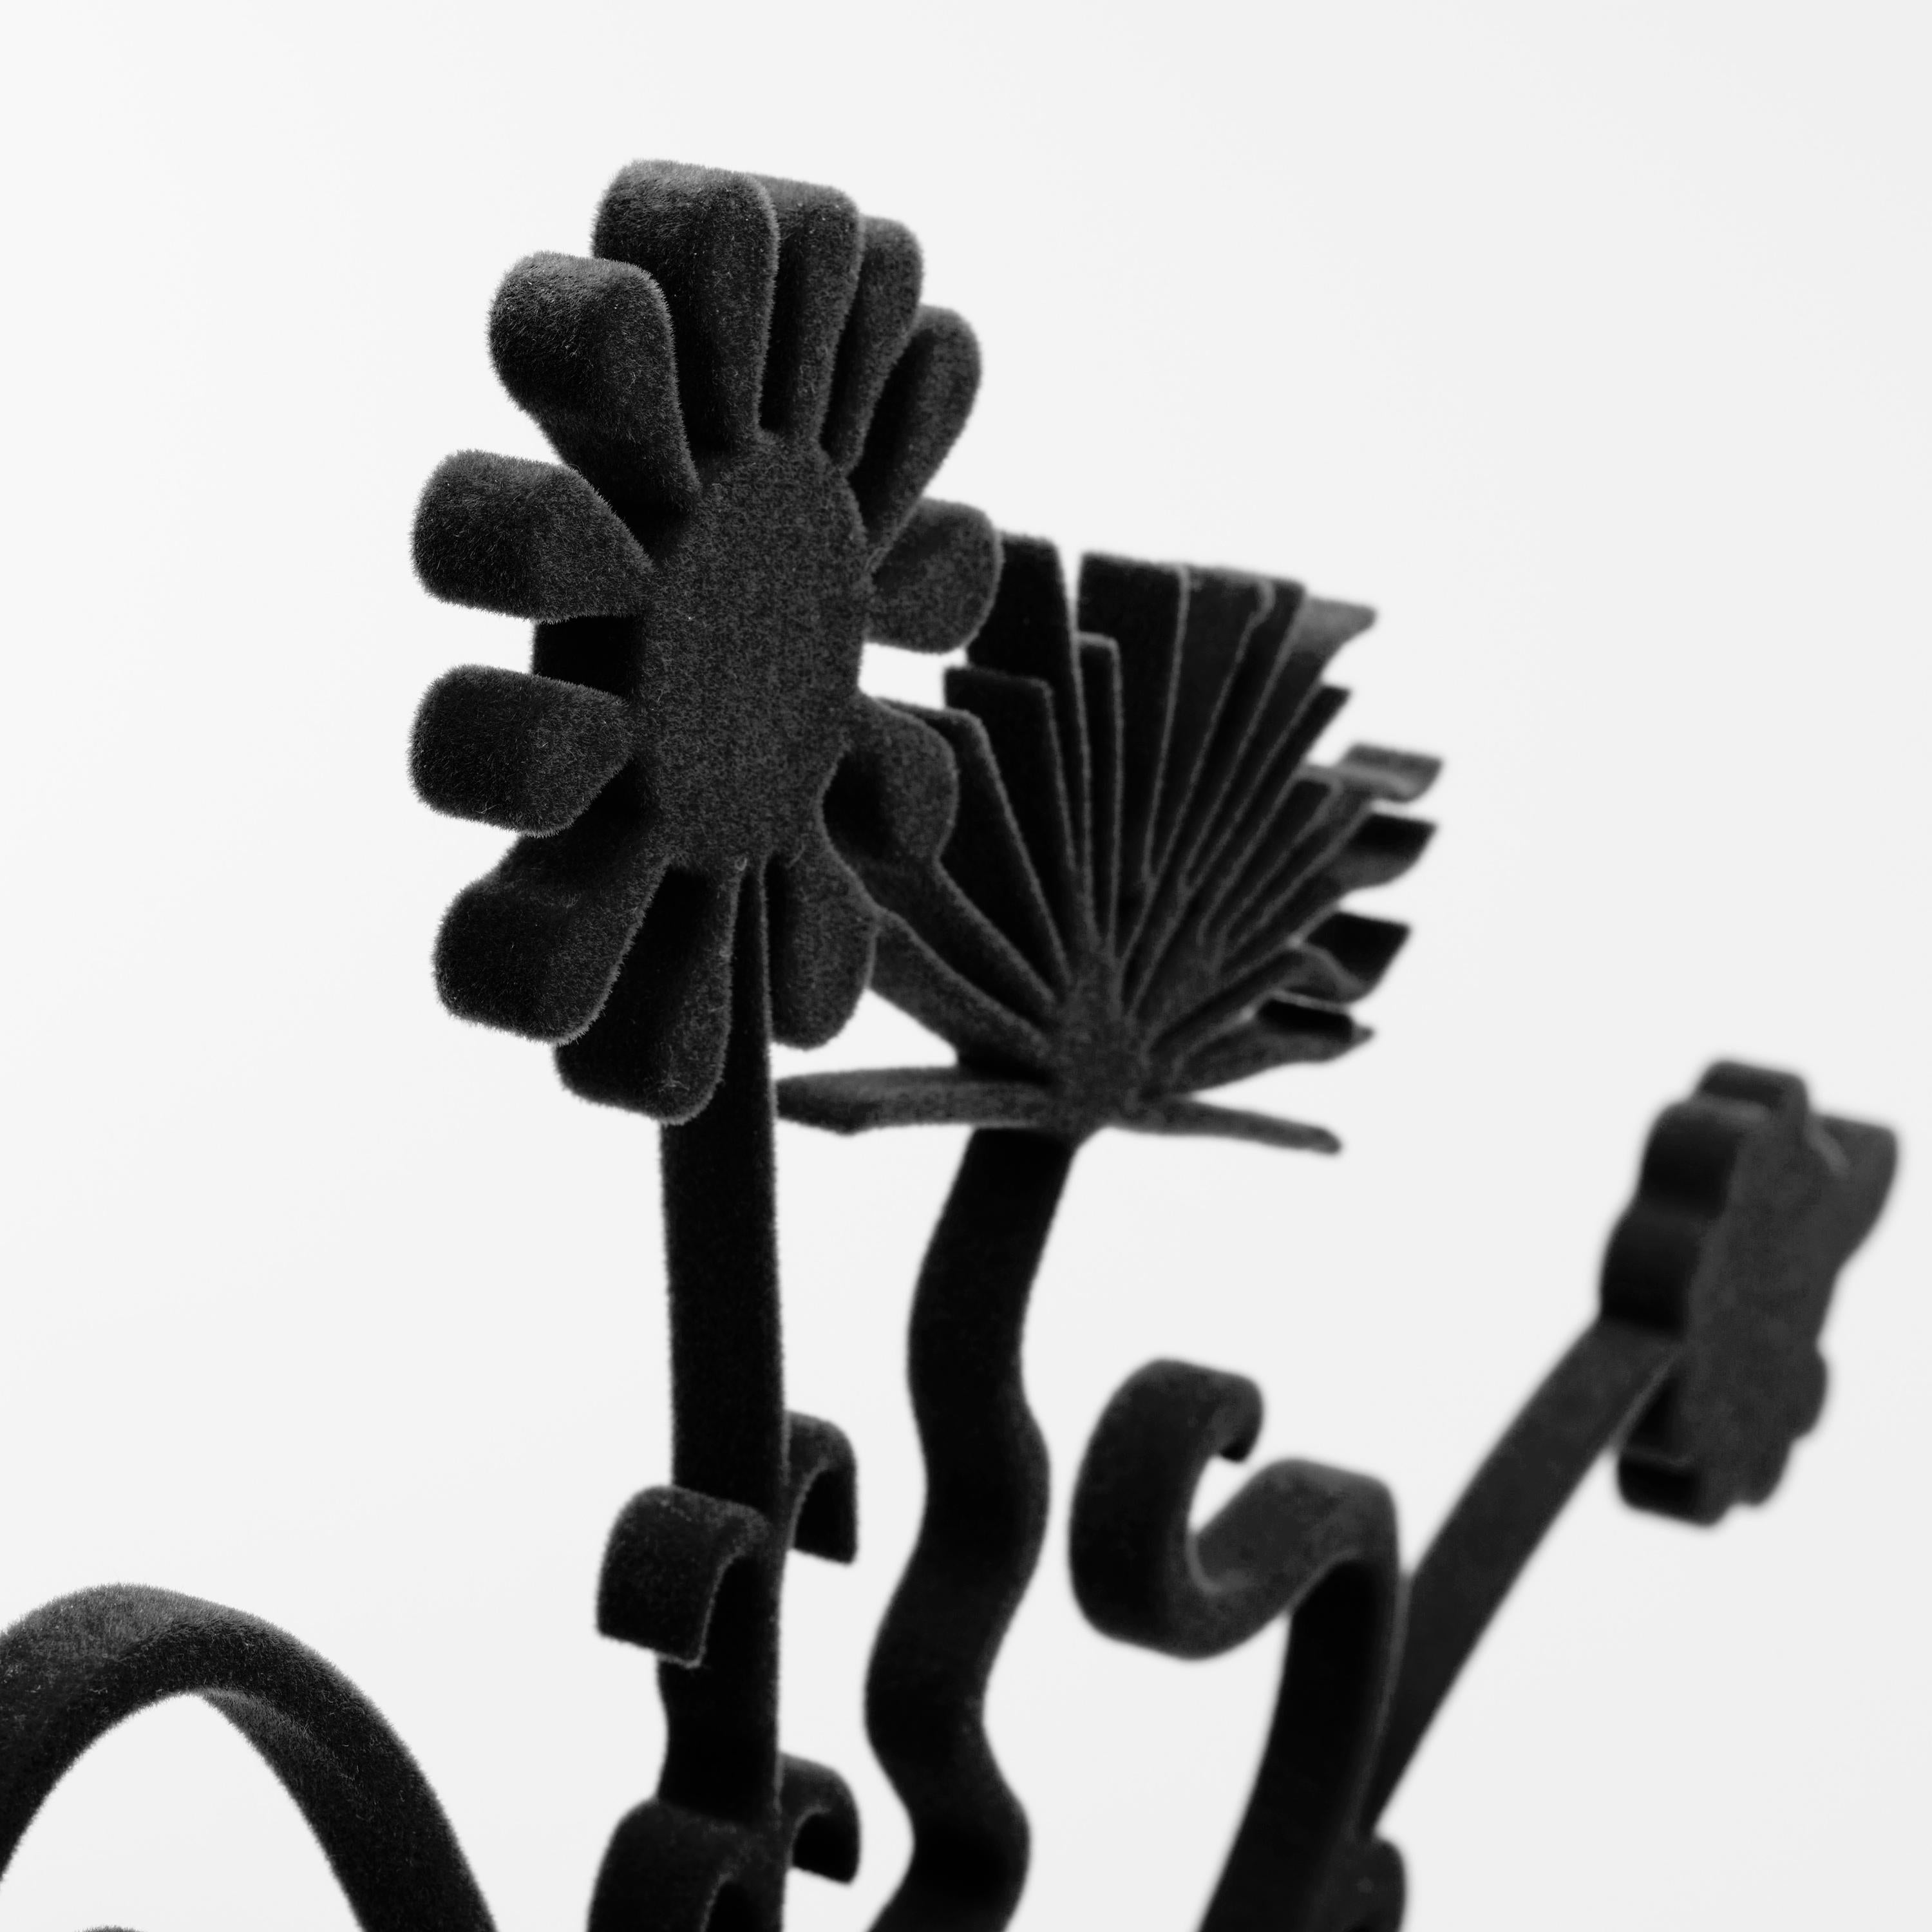 Aluminium façonné avec flocage noir monté sur une base en acier inoxydable poli avec pieds floqués.  Taille : 25 x 21 x 0,375 pouces (base 3,5 x 9 x 0,25 pouces).  Signature de l'artiste gravée sur la base ; numéro d'édition et cachet de copyright